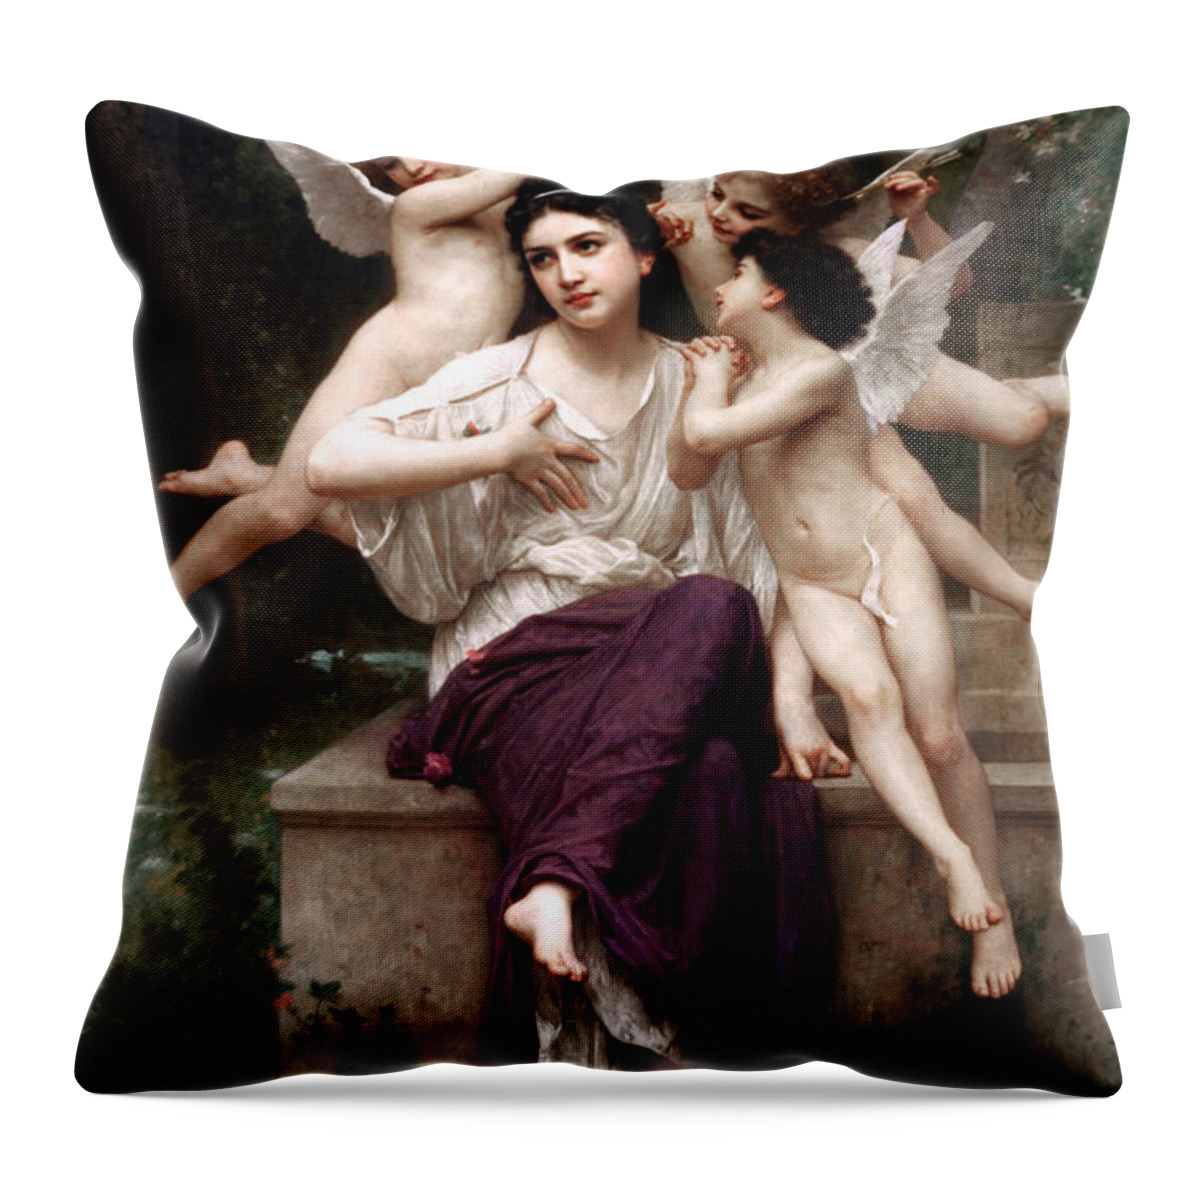 Reve De Printemps Throw Pillow featuring the painting Reve de printemps by William-Adolphe Bouguereau